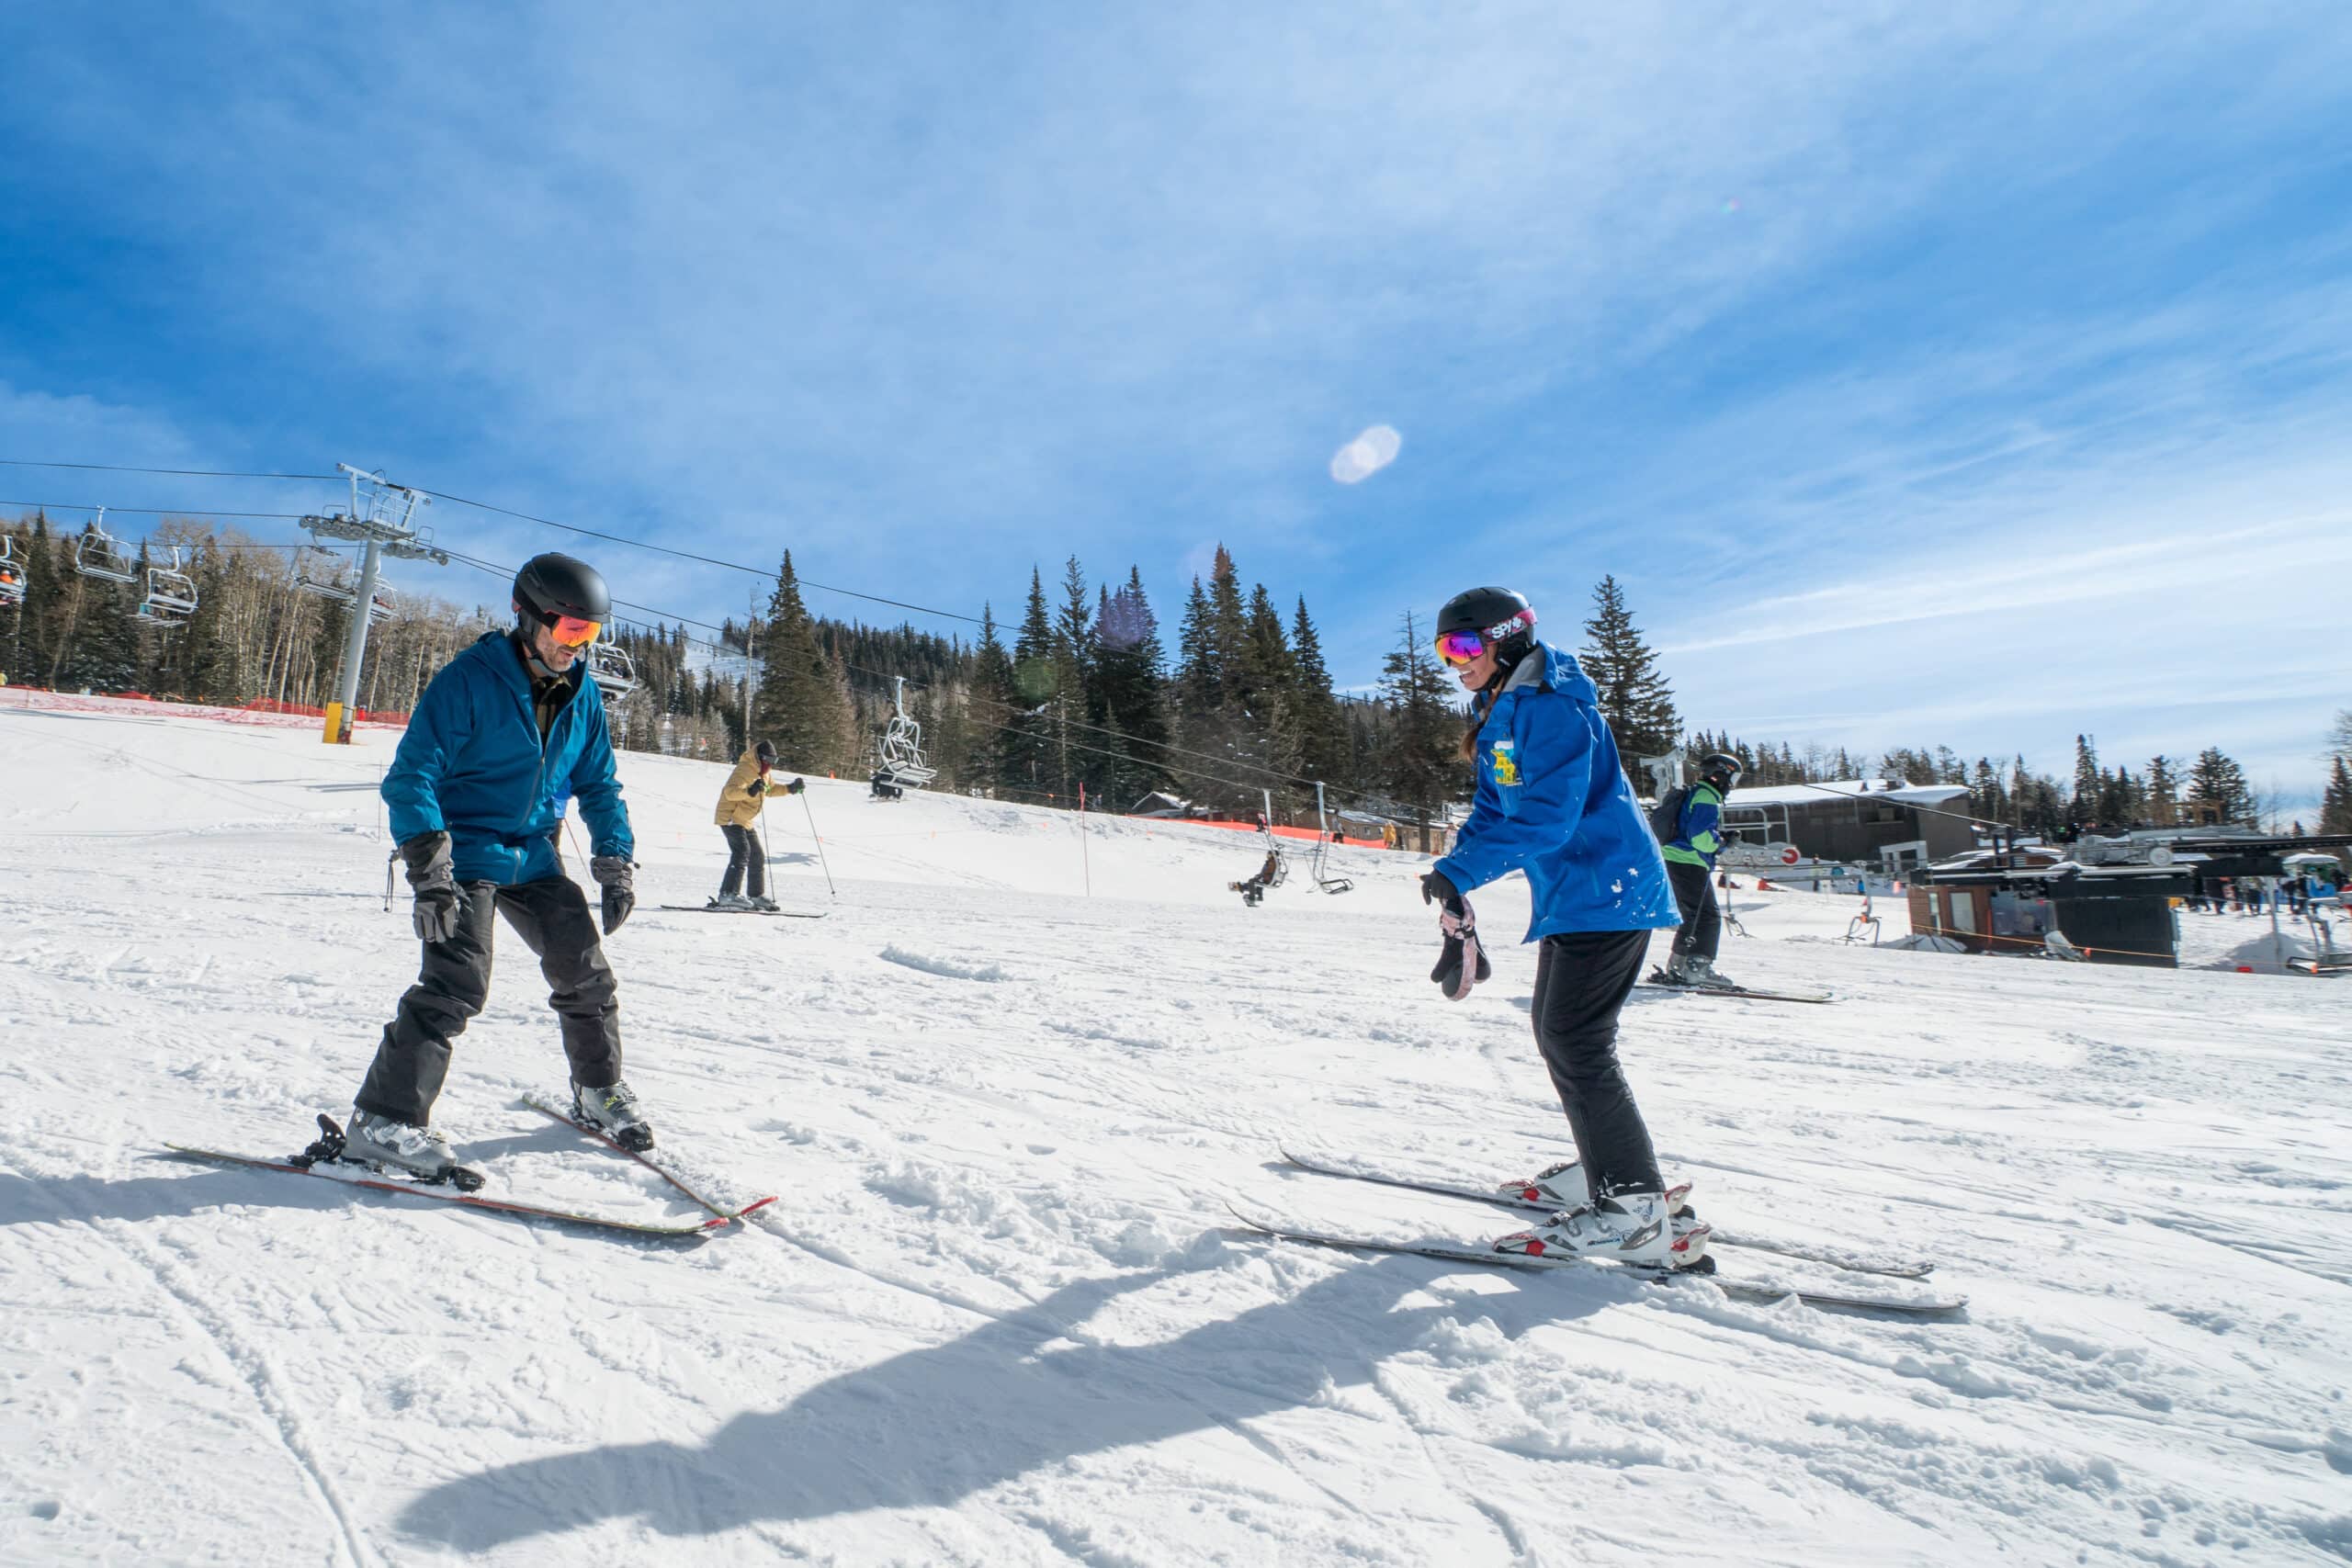 Ski Lesson at Snowbowl